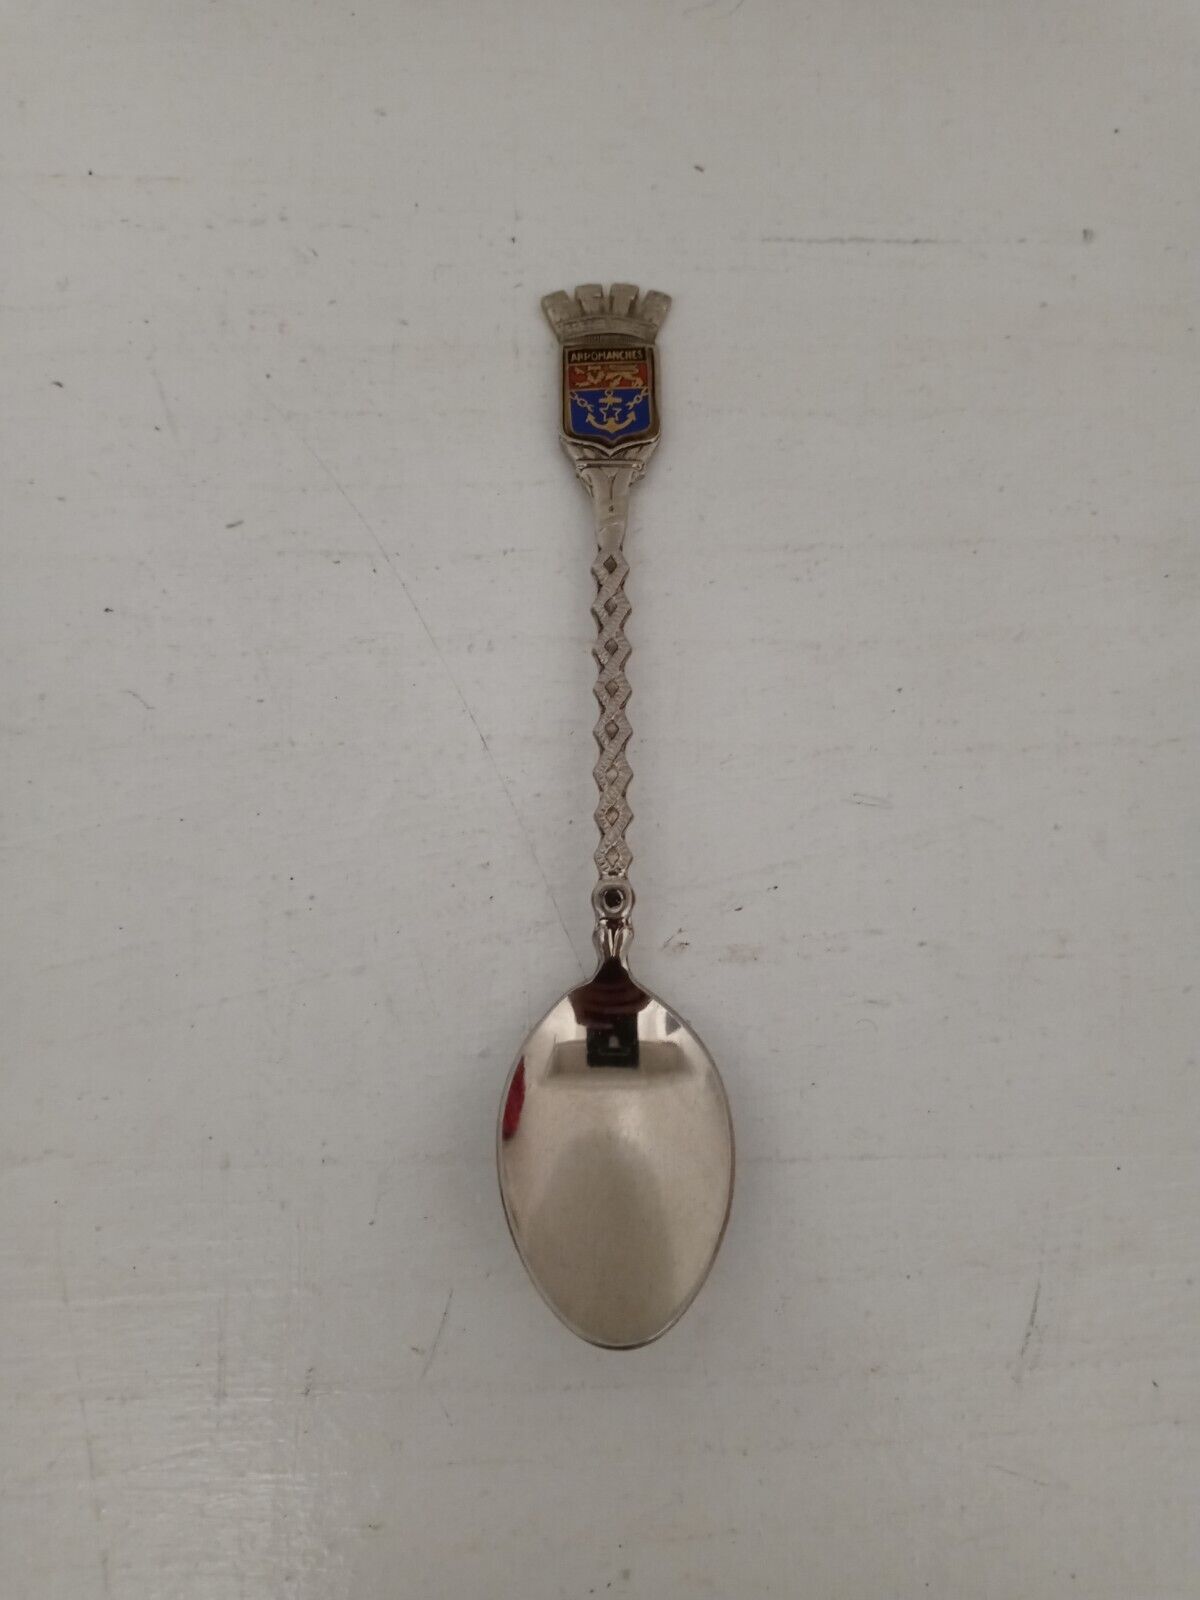 Vintage French Arromanches Crest Shield Souvenir Collectors spoon